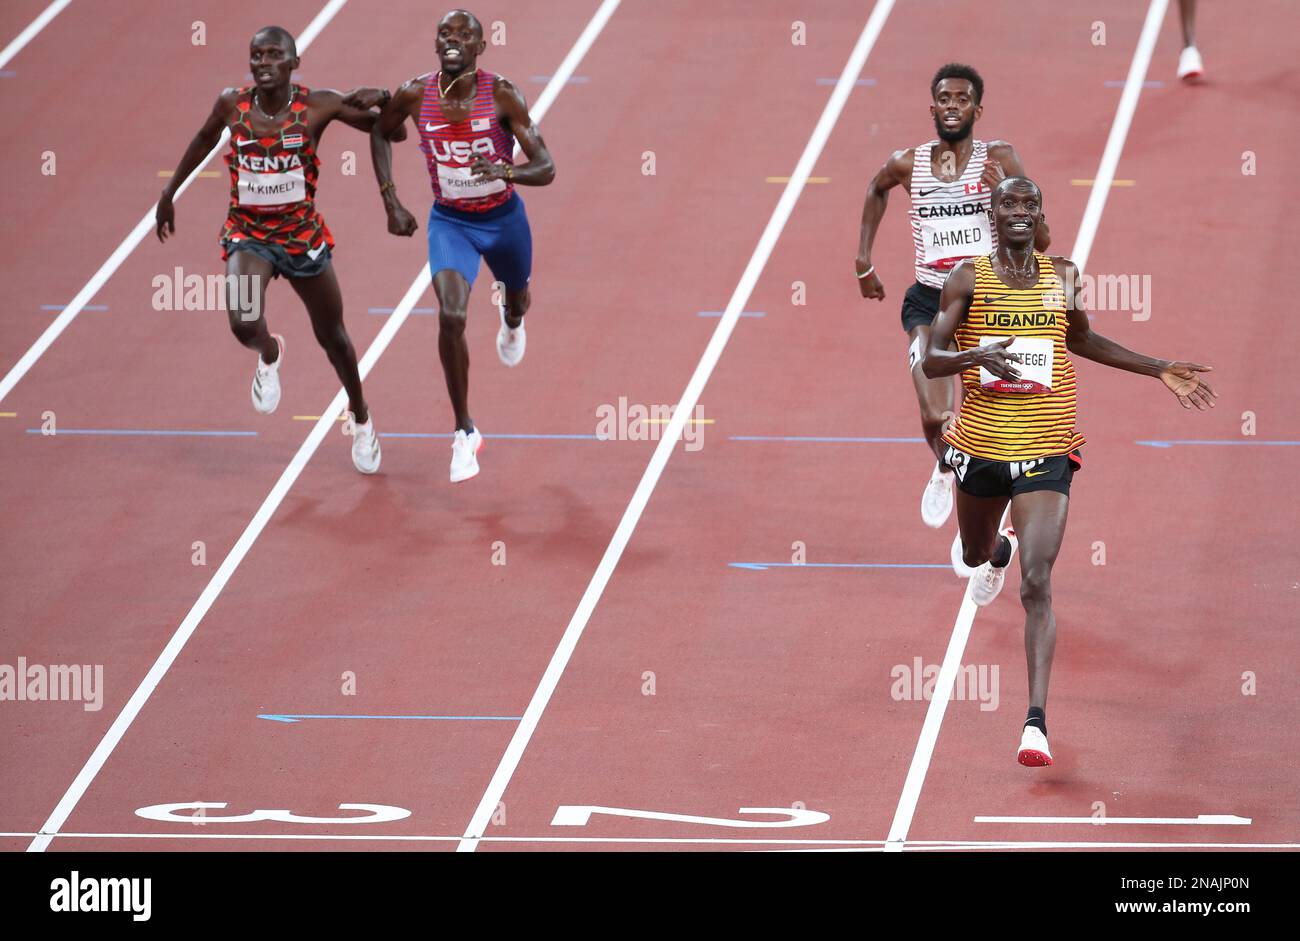 06 AOÛT 2021 - Tokyo, Japon : Joshua Cheptegei, de l'Ouganda, sur le point de remporter la finale Athletics Men 5 000m devant Mohammed Ahmed, du Canada, et Paul Cheli Banque D'Images